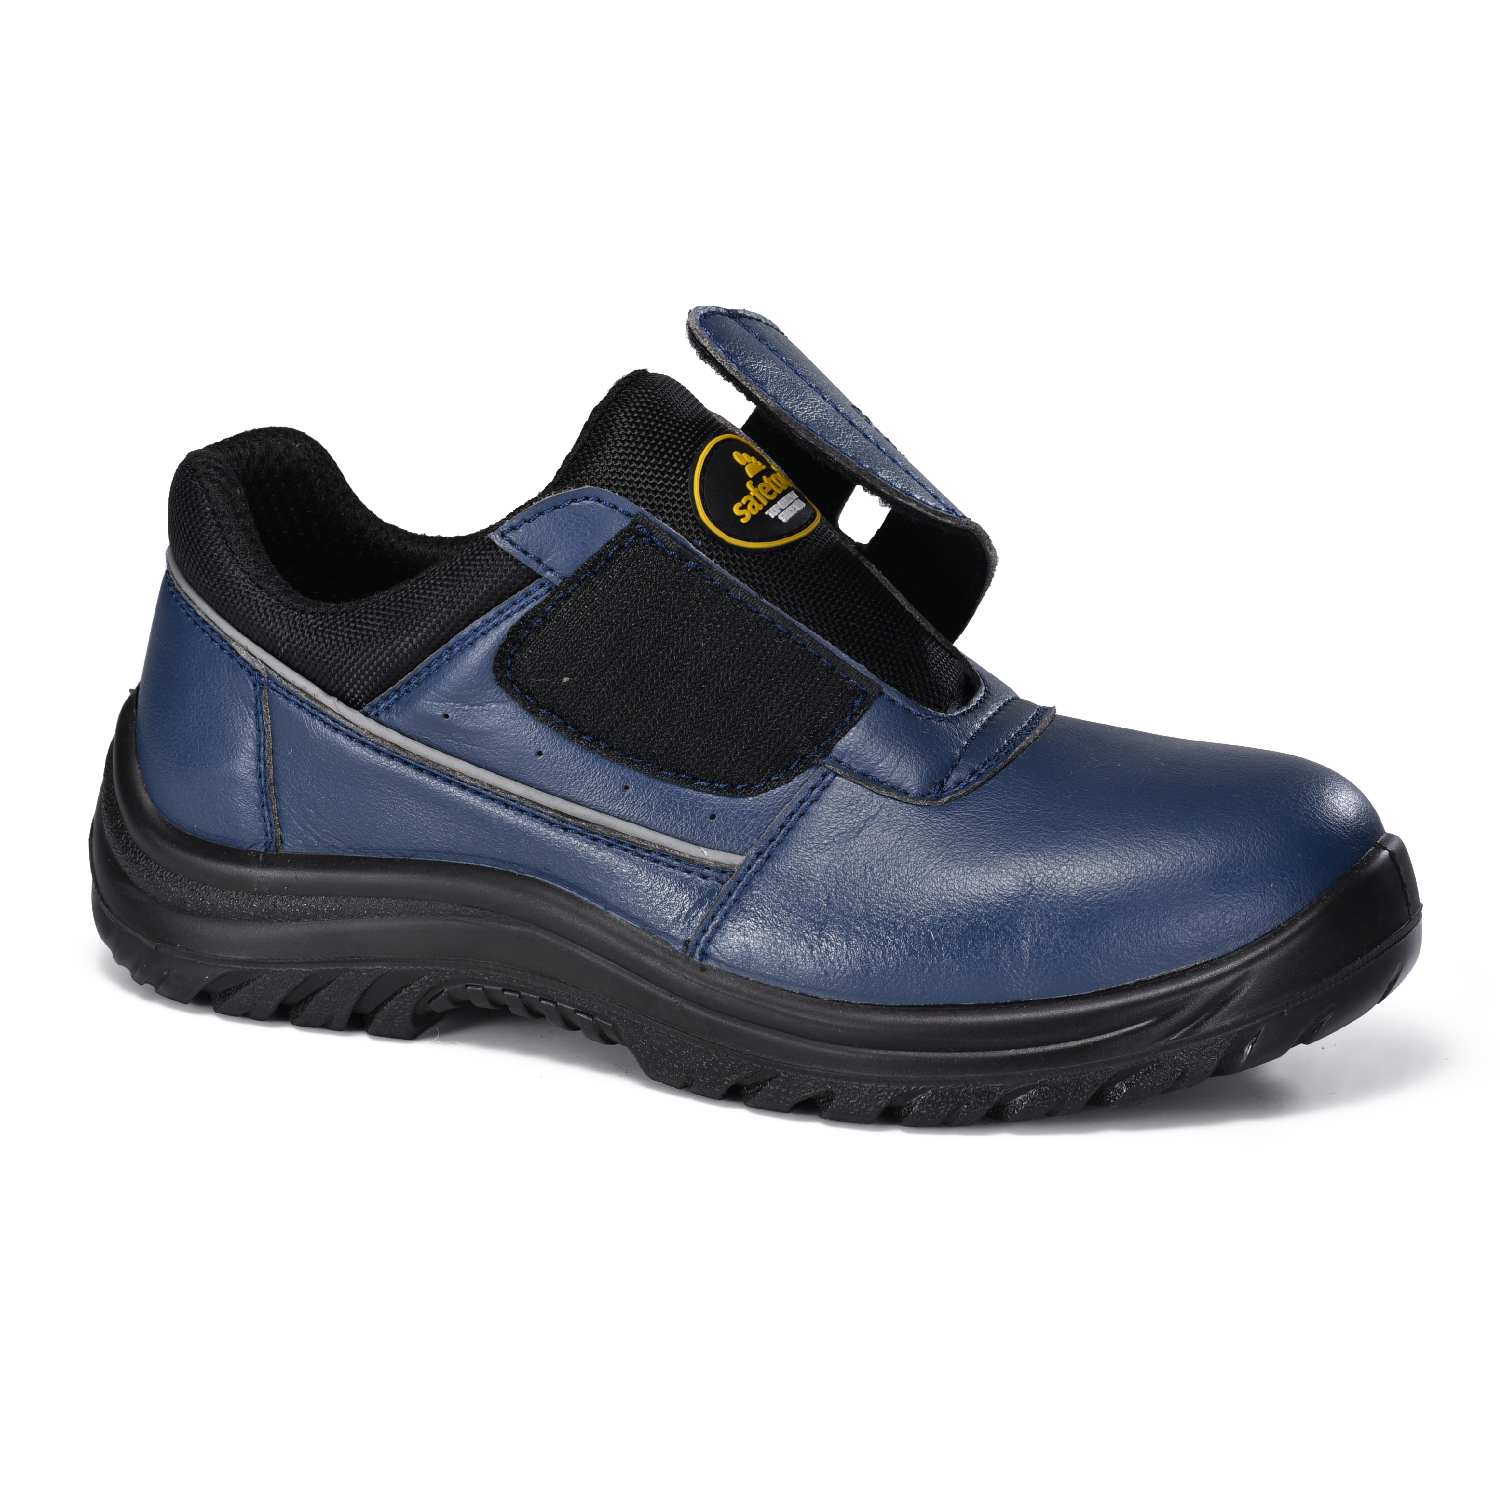 Chaussures de sécurité légères en cuir de fibre Micfo approuvées par ESD de couleur bleue S2 L-7531